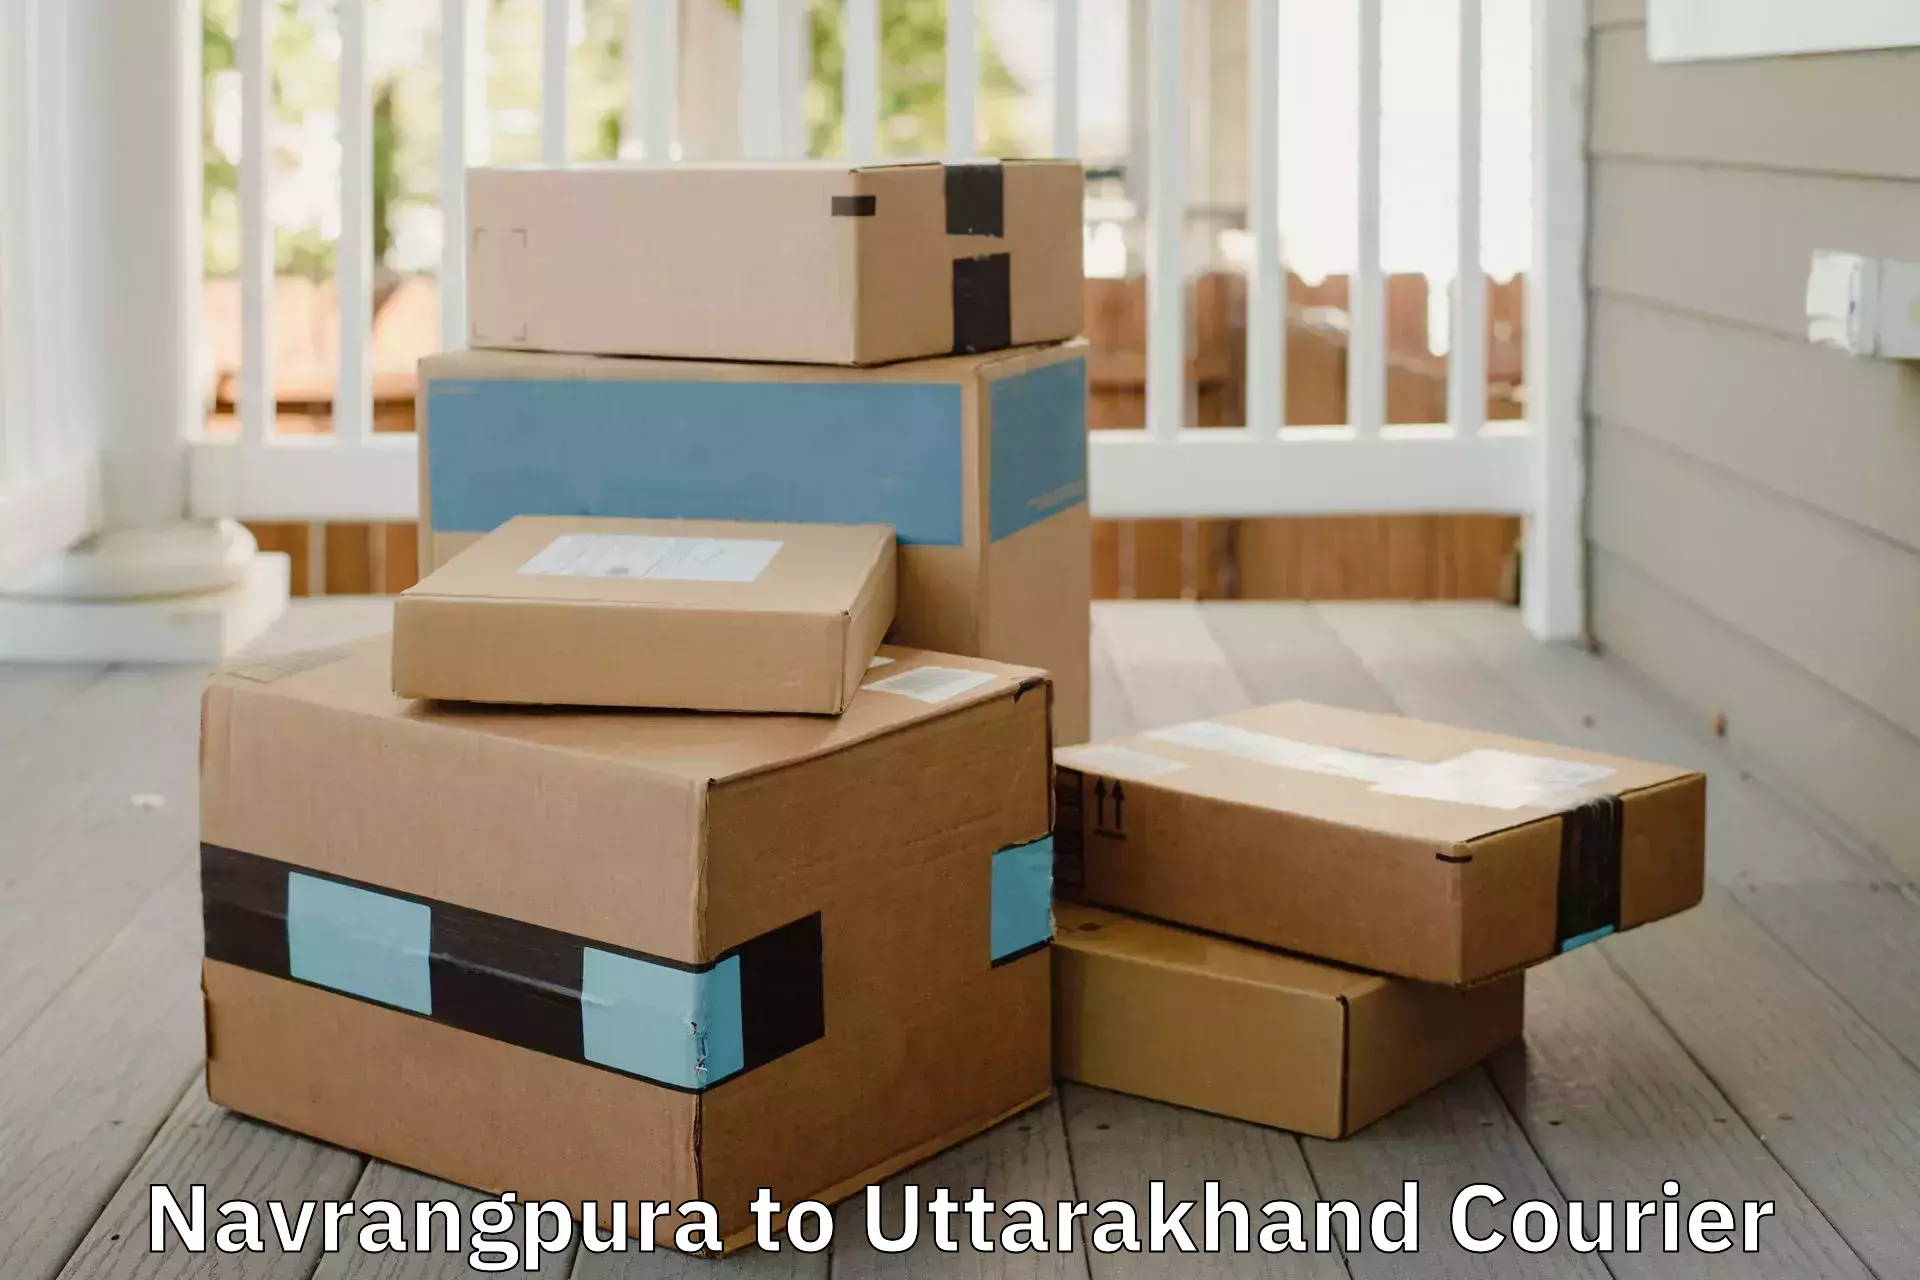 Furniture moving plans Navrangpura to Uttarakhand